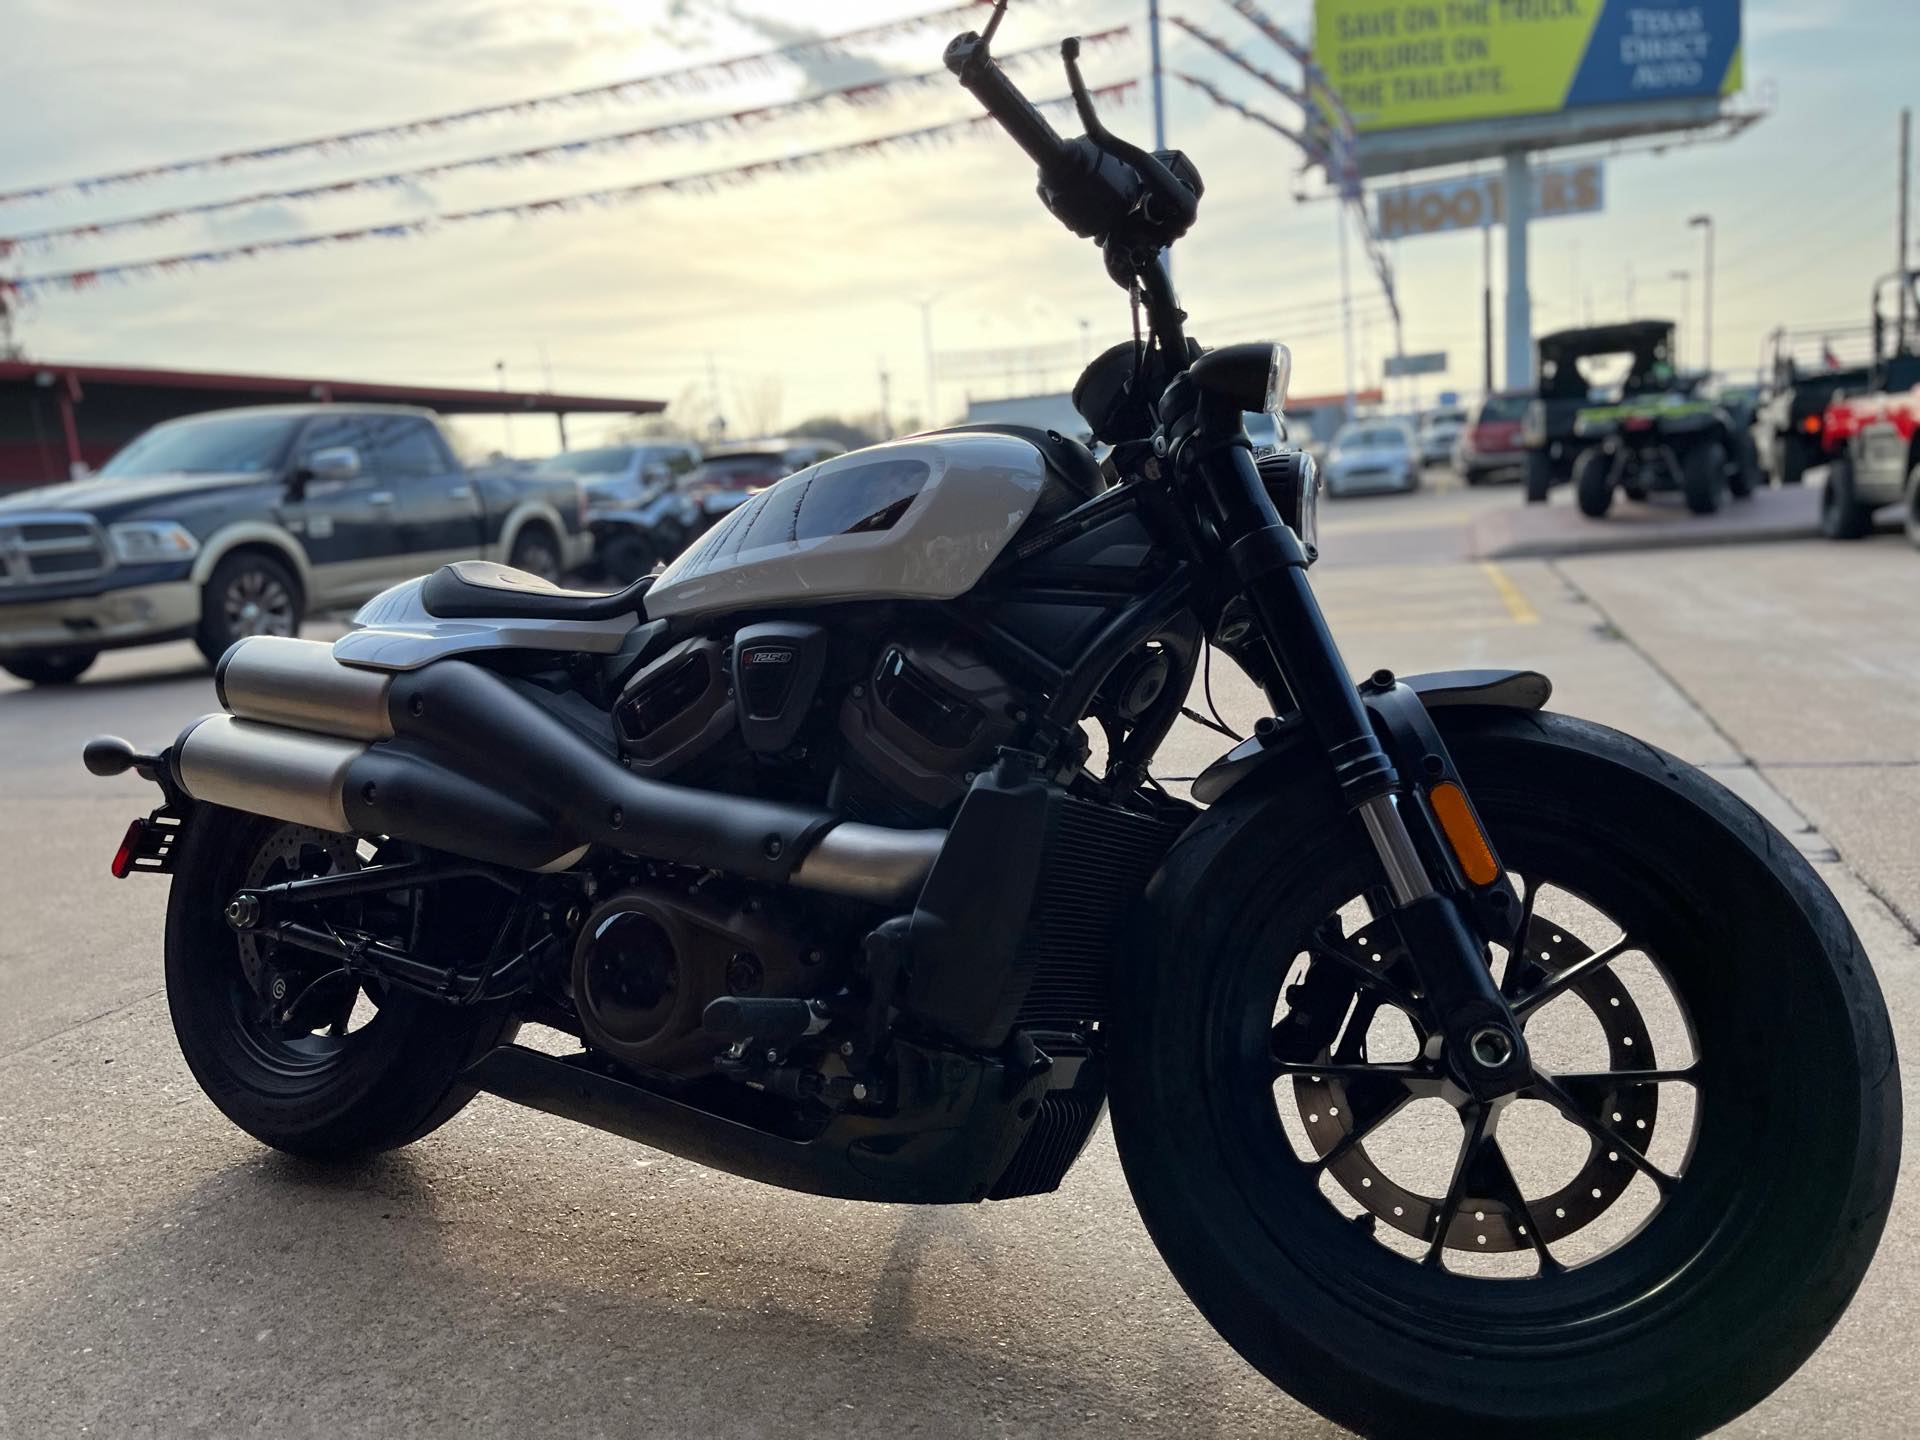 2021 Harley-Davidson Sportster S at Wild West Motoplex